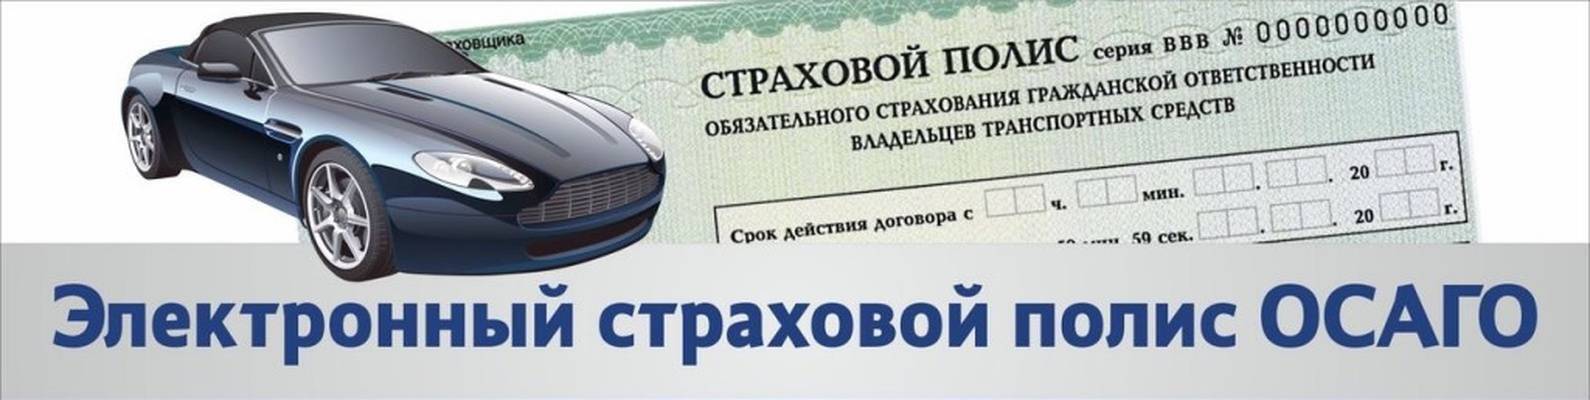 Оформить страховку на автомобиль онлайн казахстан